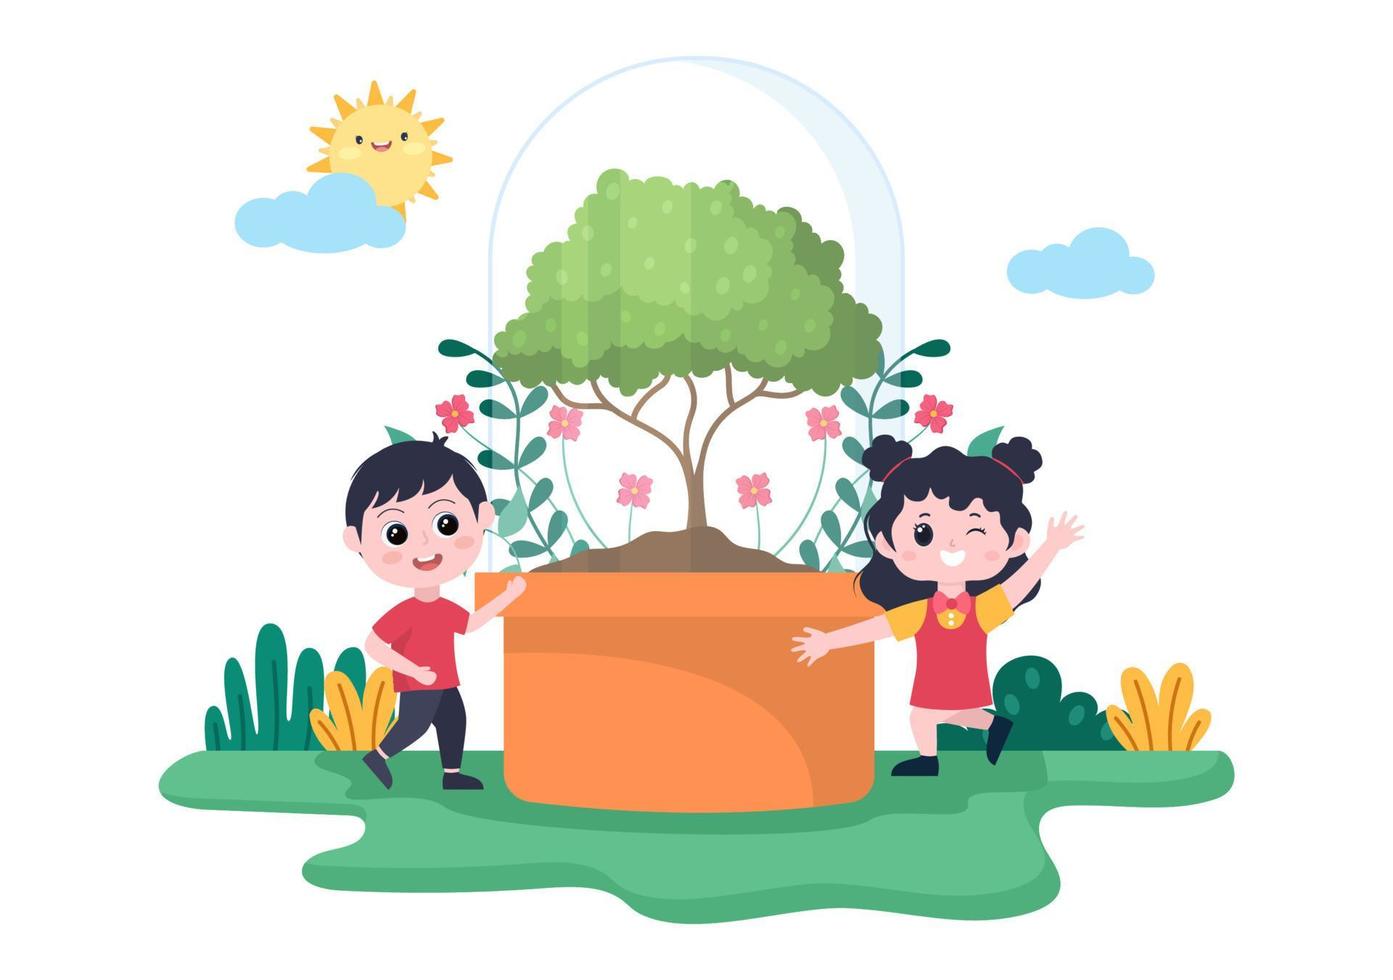 Menschen, die Bäume pflanzen, flache Cartoon-Vektor-Illustration mit Gartenarbeit, Landwirtschaft und Landwirtschaft, verwenden Baumwurzeln oder eine Schaufel für das Umweltkonzept vektor